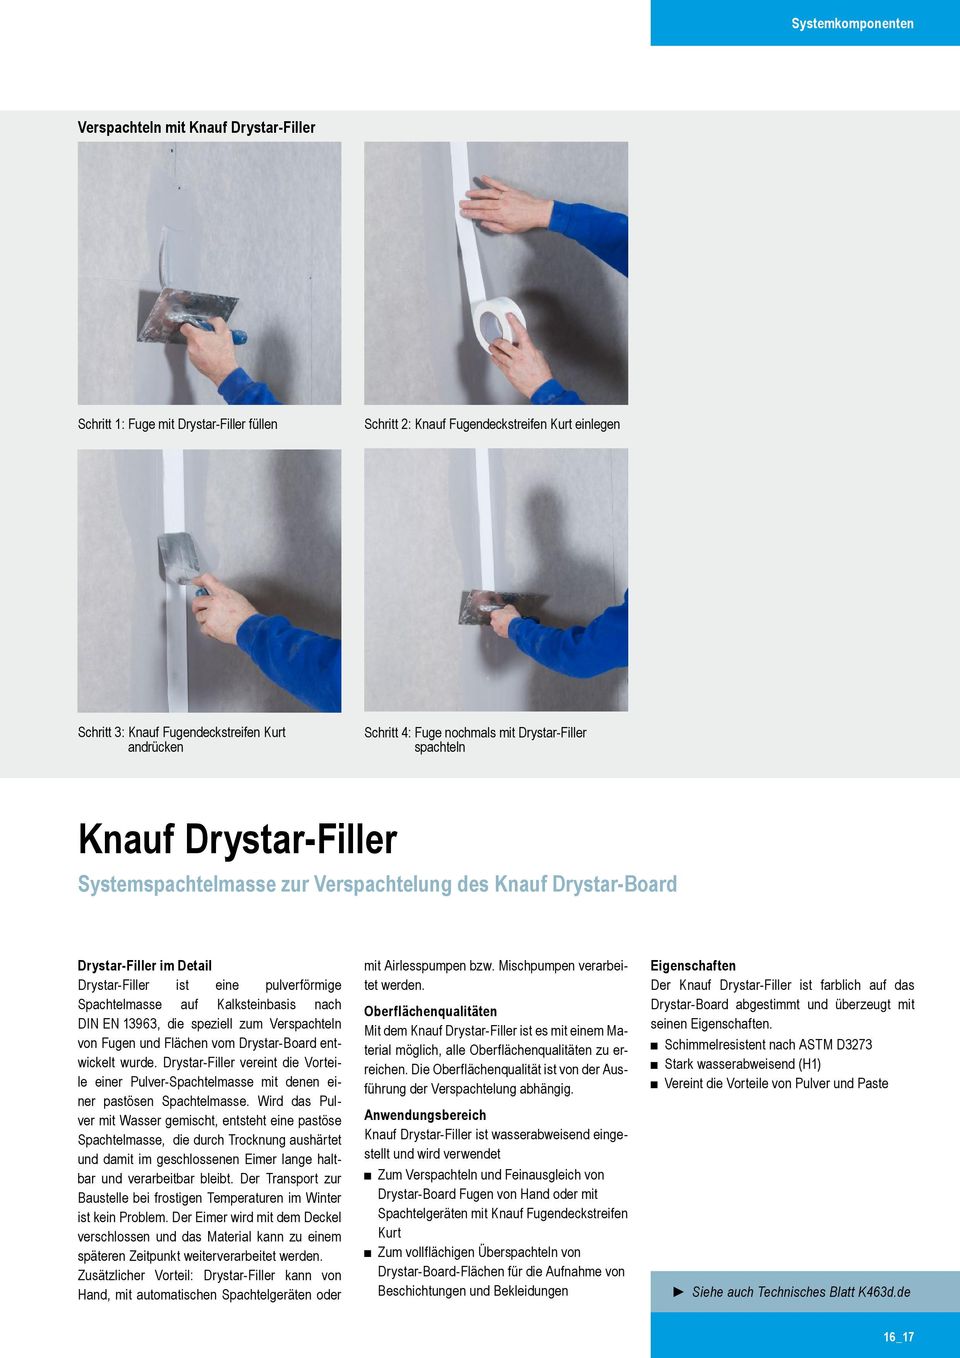 Detail Drystar Filler ist eine pulverförmige Spachtelmasse auf Kalksteinbasis nach DIN EN 13963, die speziell zum Verspachteln von Fugen und Flächen vom Drystar Board entwickelt wurde.